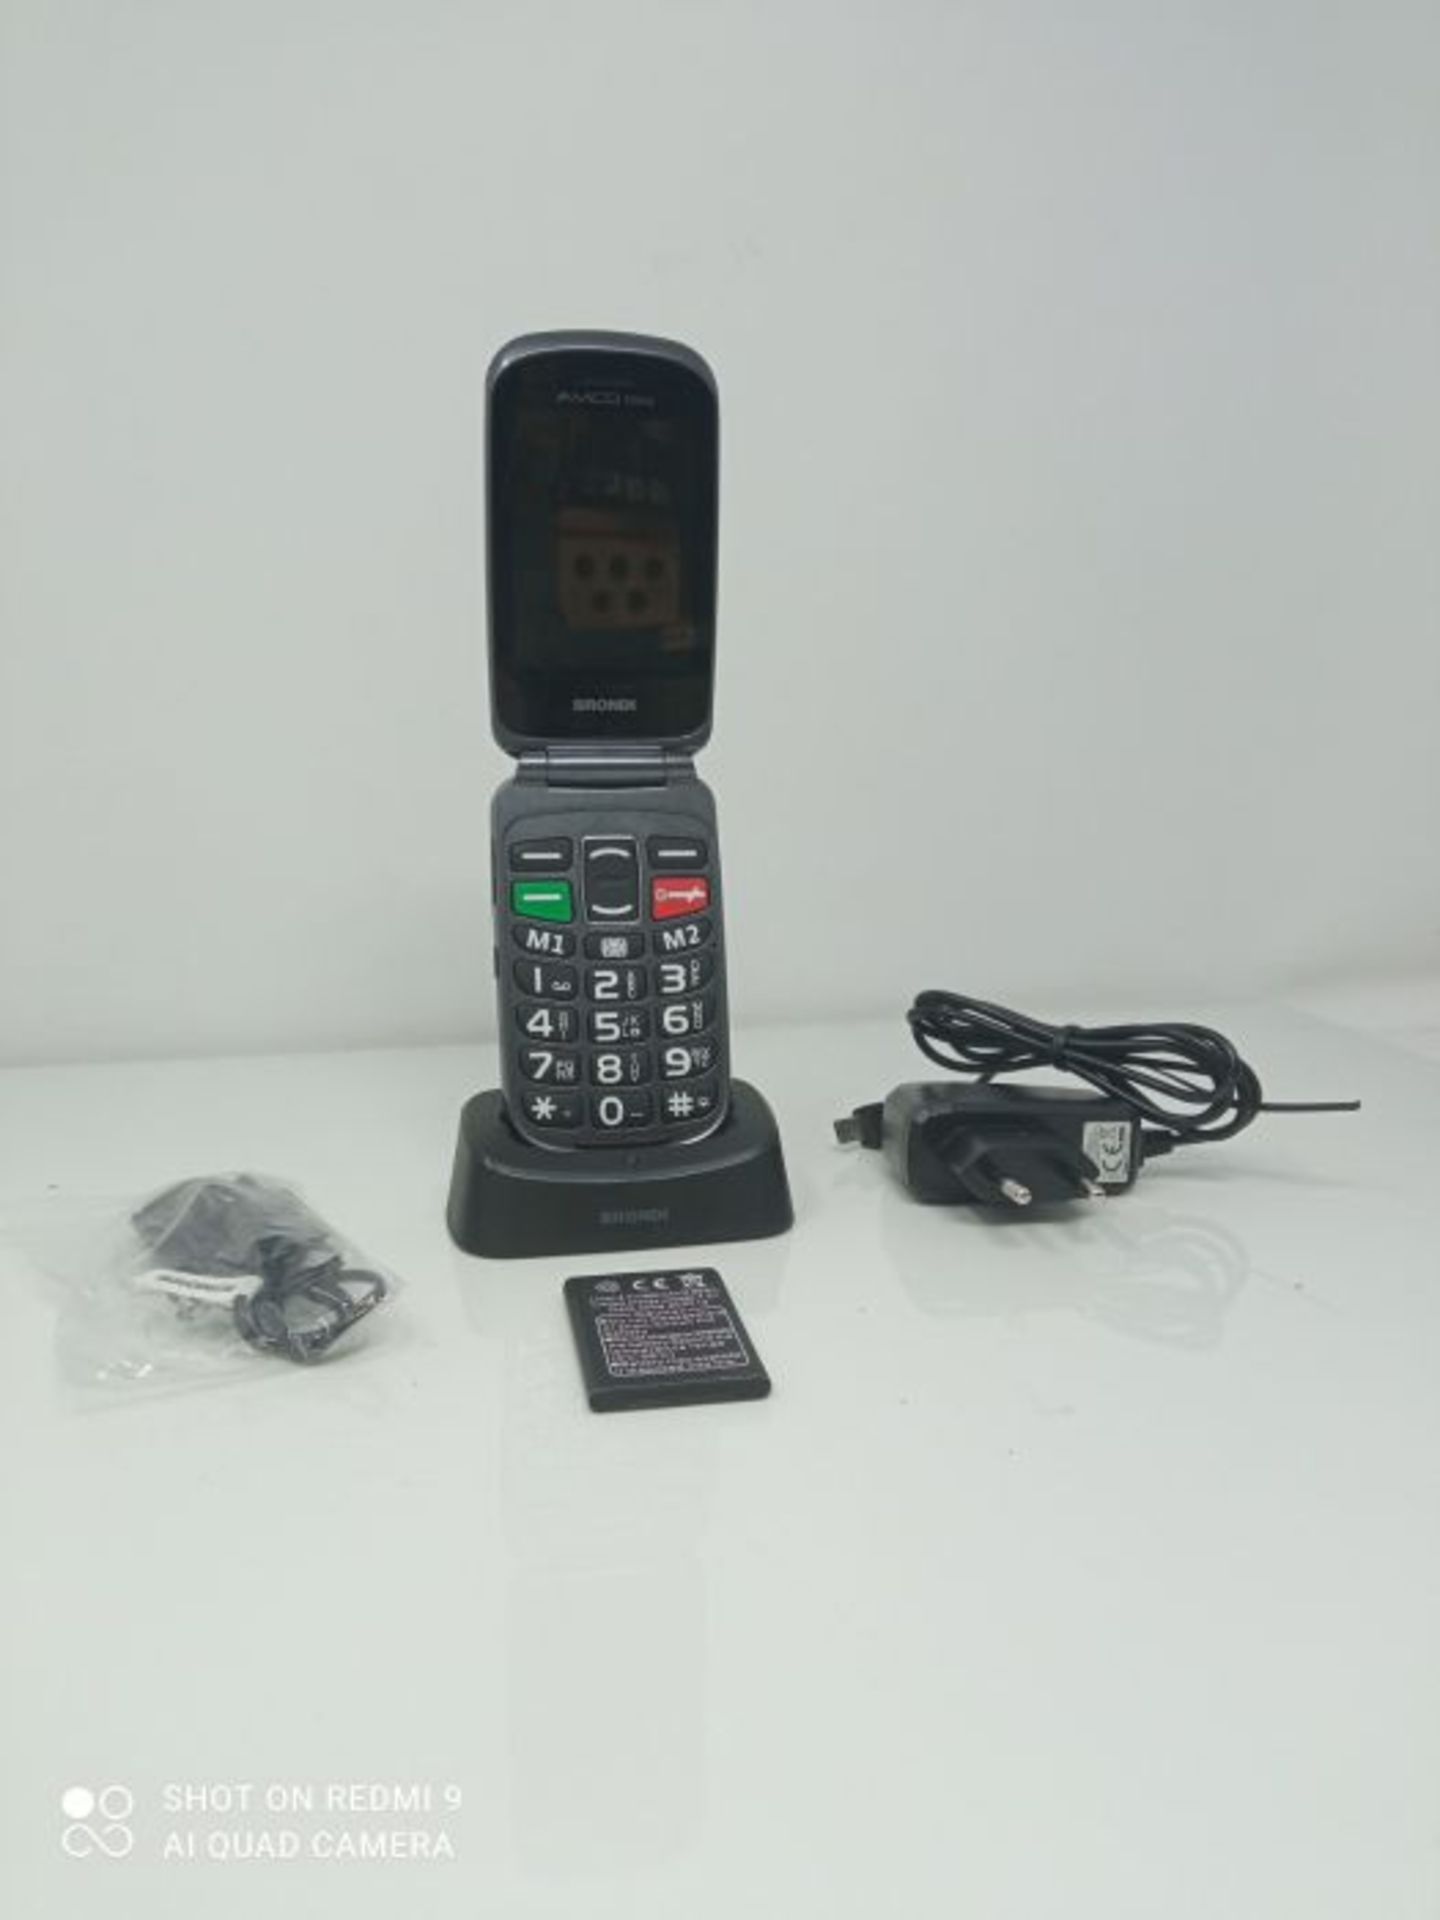 RRP £66.00 Brondi Amico Fedele, Telefono cellulare GSM per anziani con tasti grandi, tasto SOS e - Image 3 of 3